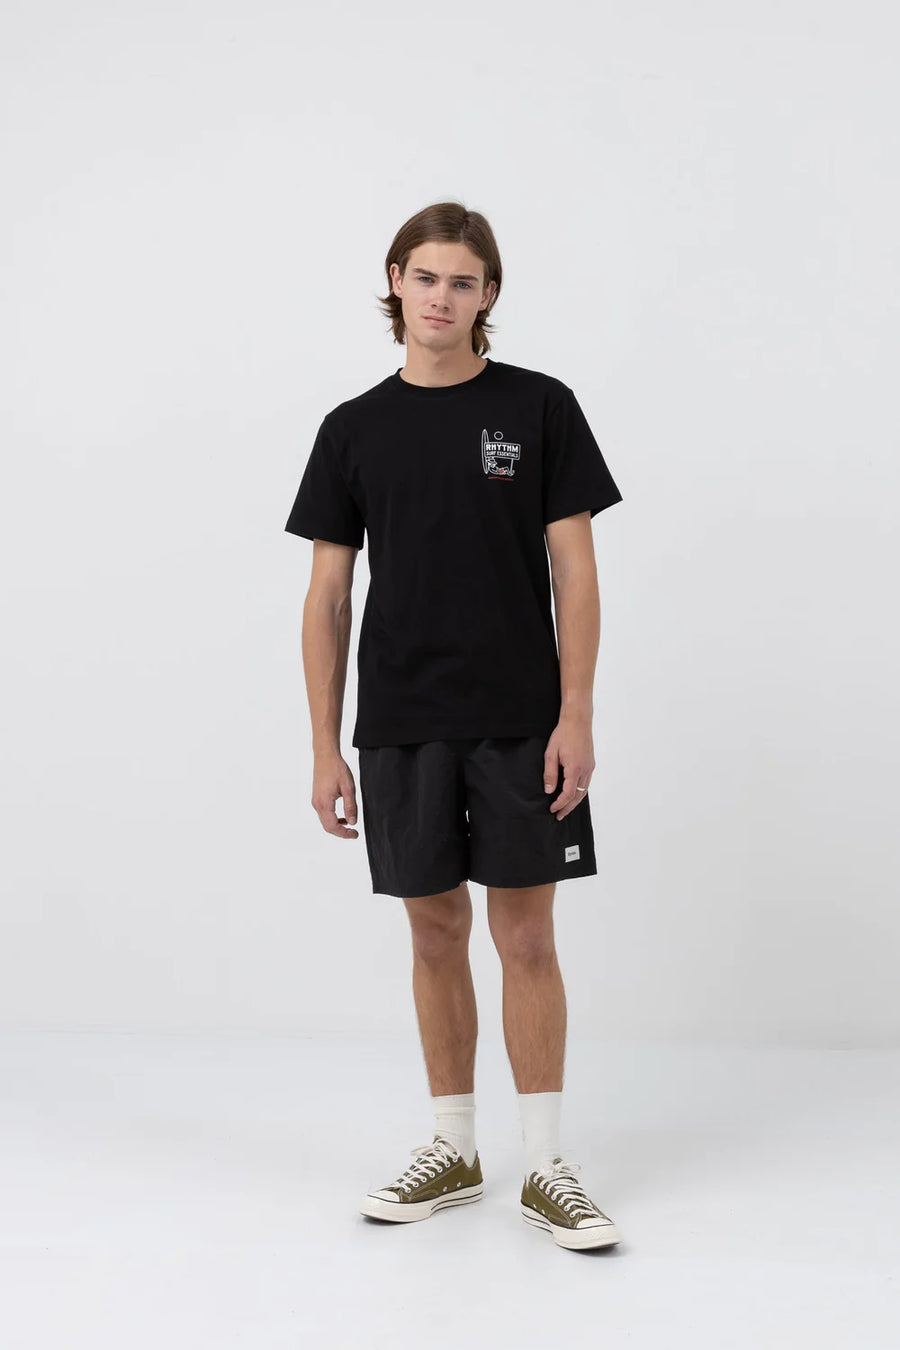 Wanderer Ss T-Shirt - Black